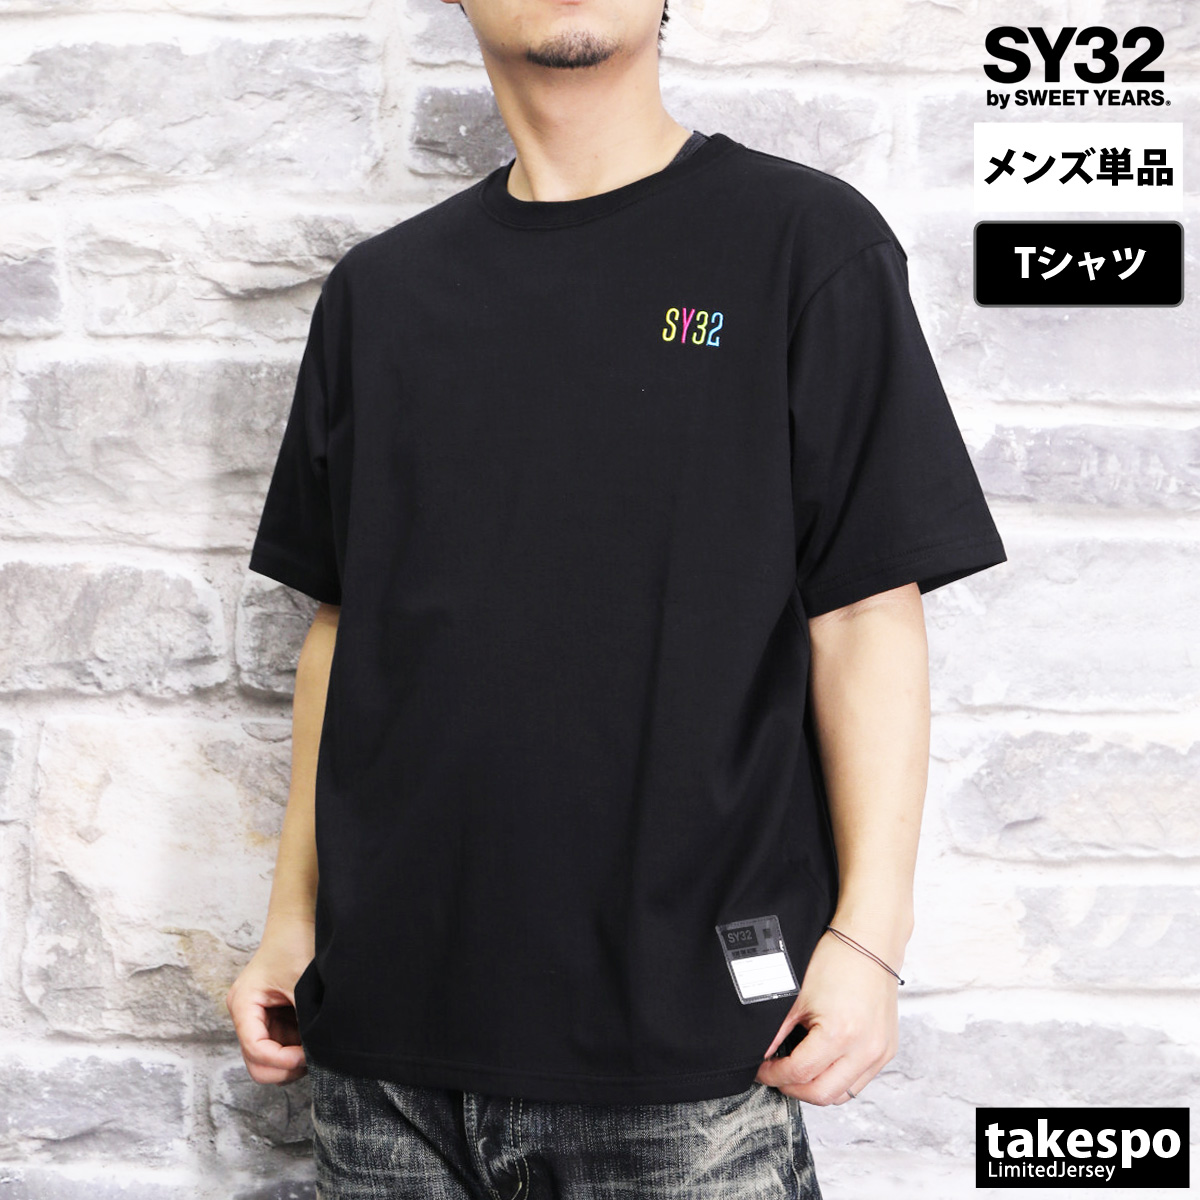 スウィートイヤーズ Tシャツ メンズ 上 SY32 by SWEET YEARS 半袖 14157J...